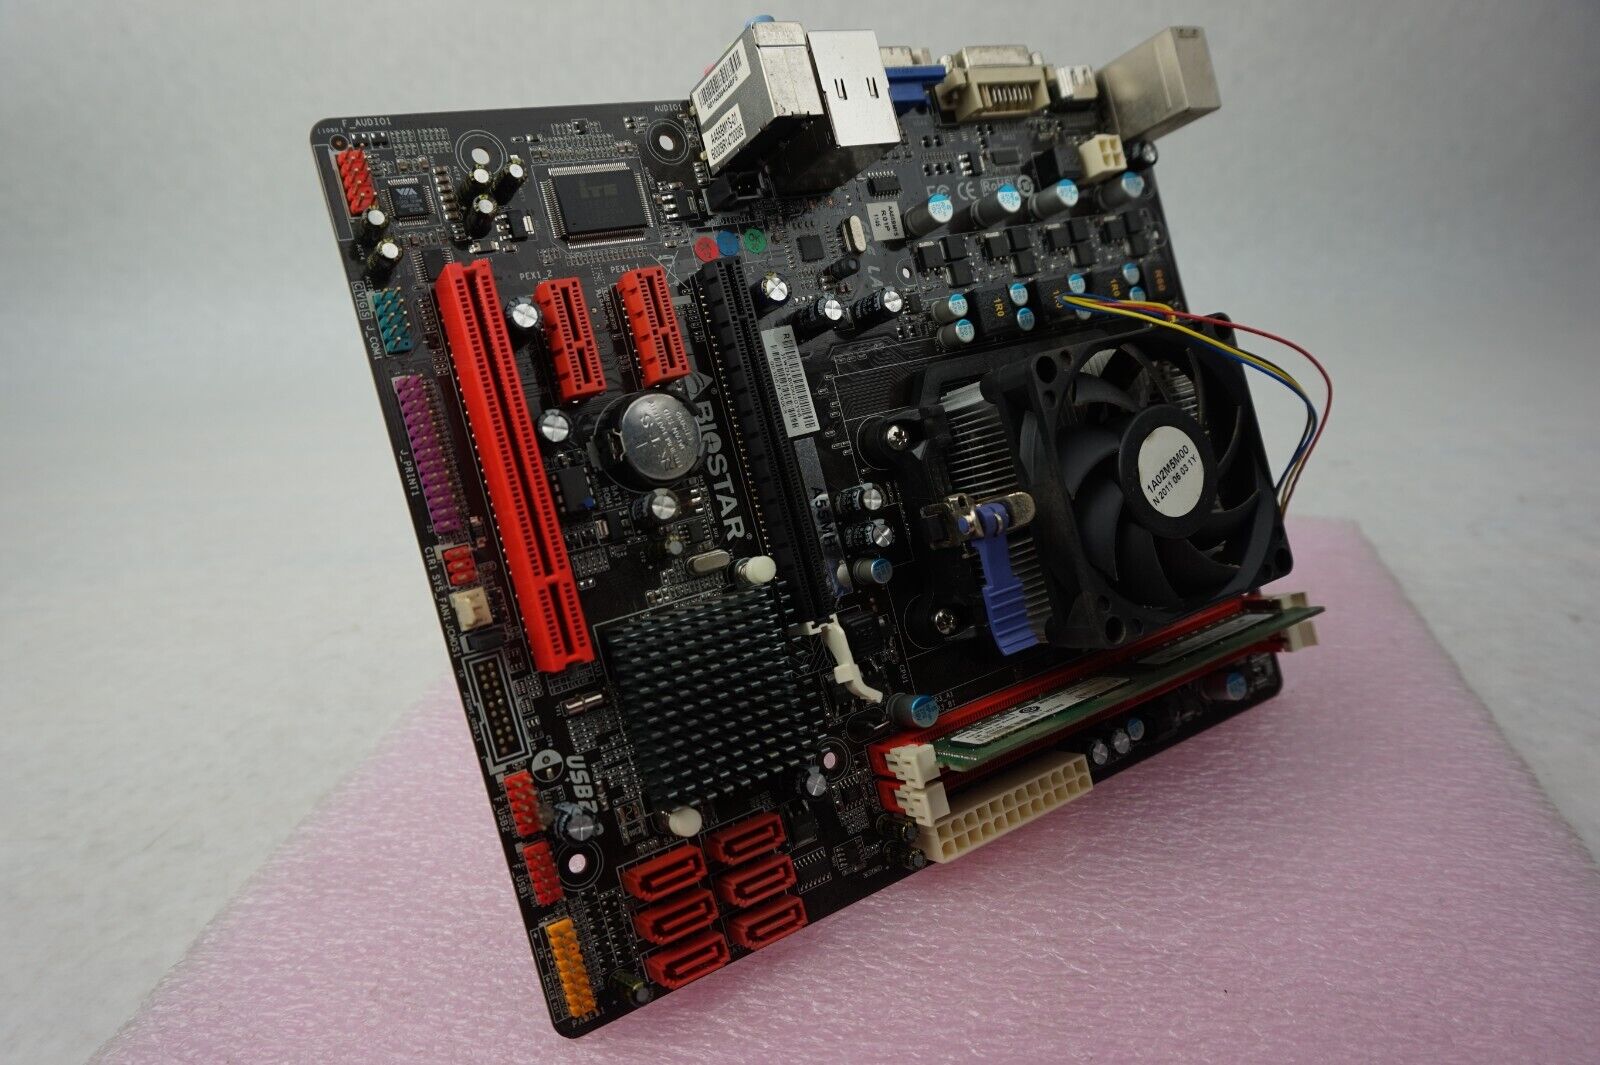 Biostar A55MH Motherboard AMD A4-3300 2.5GHz 4GB RAM w/ I/O Shield